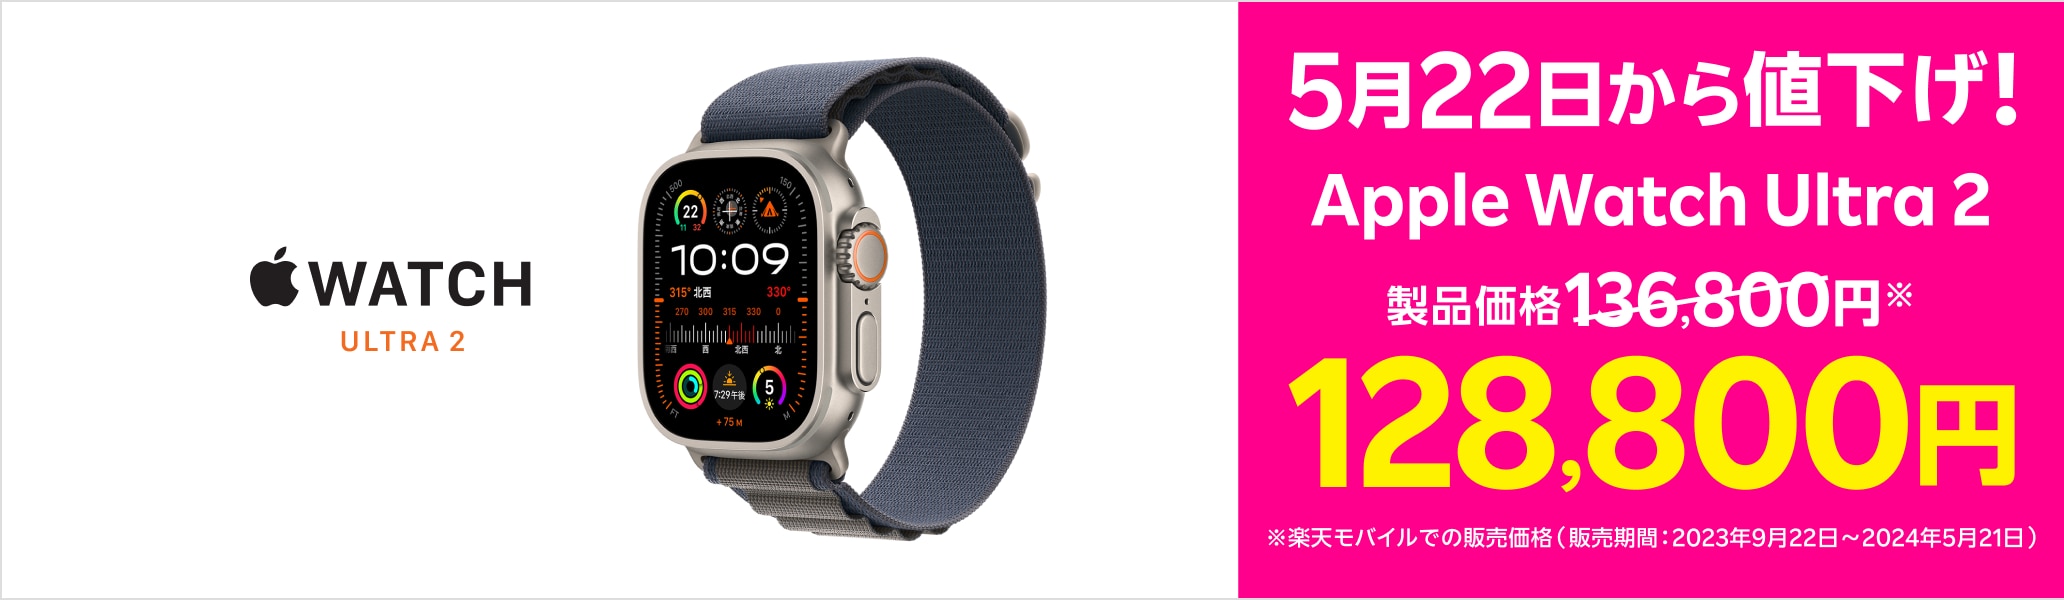 5月22日からApple Watch Ultra 2が値下げ。製品価格136,800円※→128,800円※楽天モバイルでの販売価格（2023年9月22日～2024年5月21日）